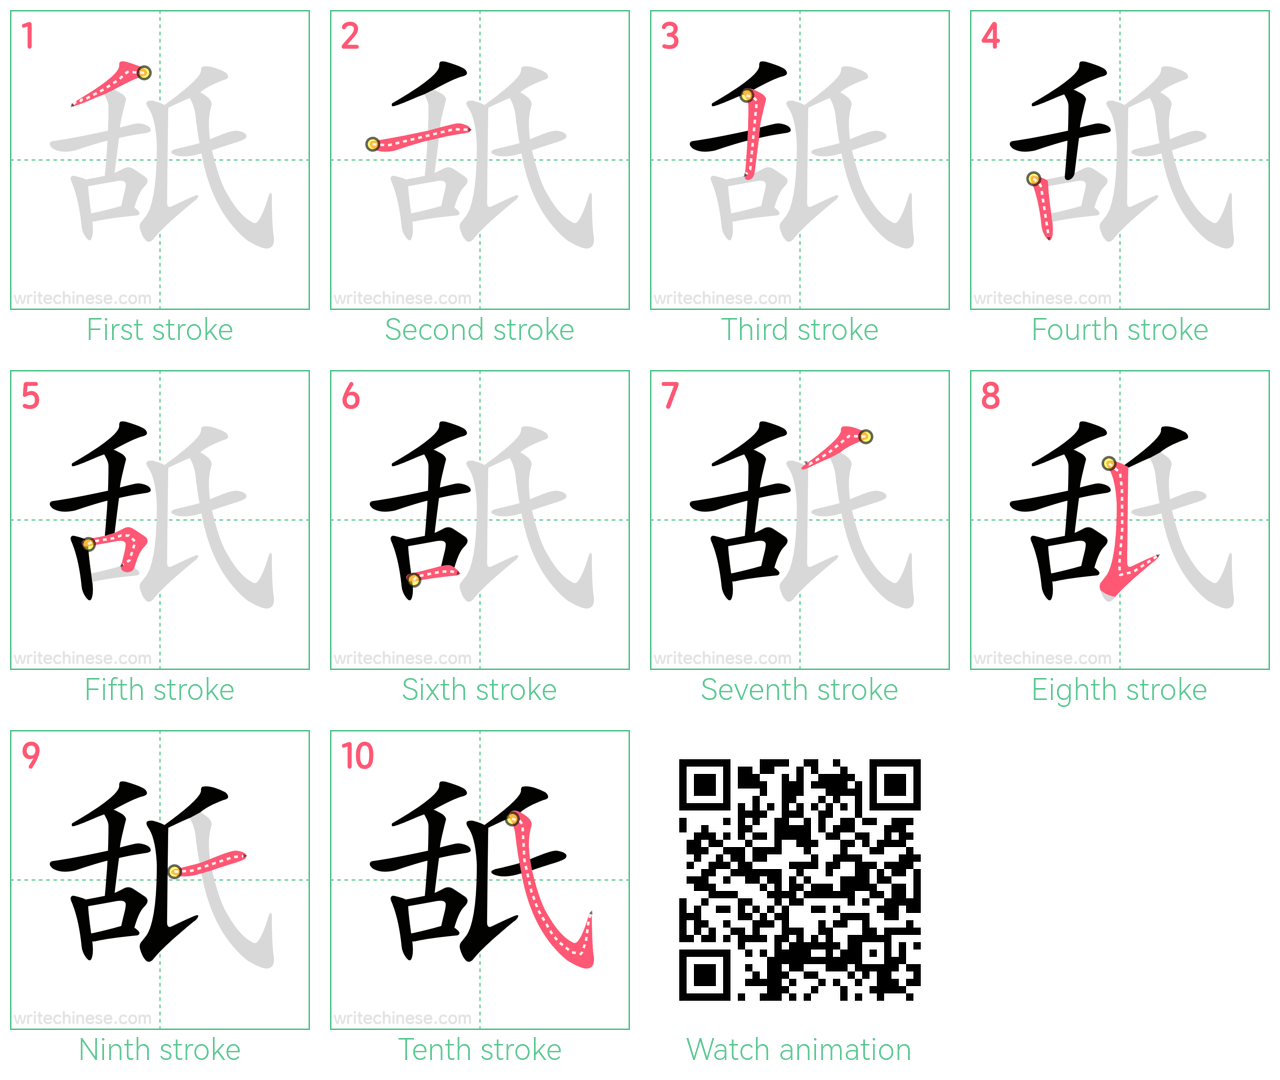 舐 step-by-step stroke order diagrams